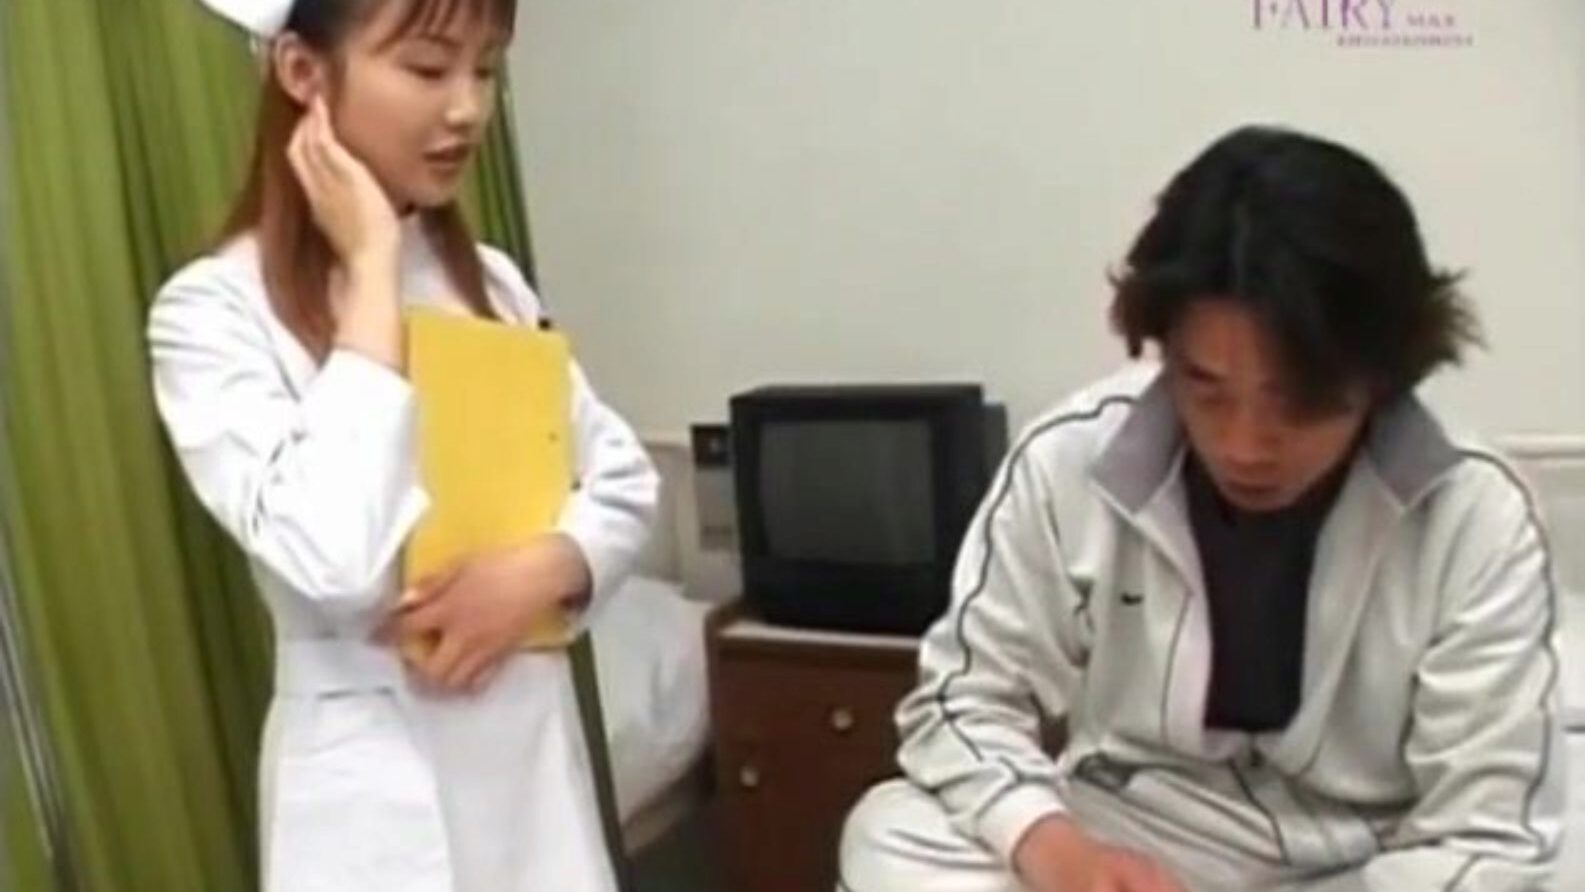 рина усуи дрољаста медицинска сестра води пацијента сцхлонг у рупу за лице и - више на хотајп цом